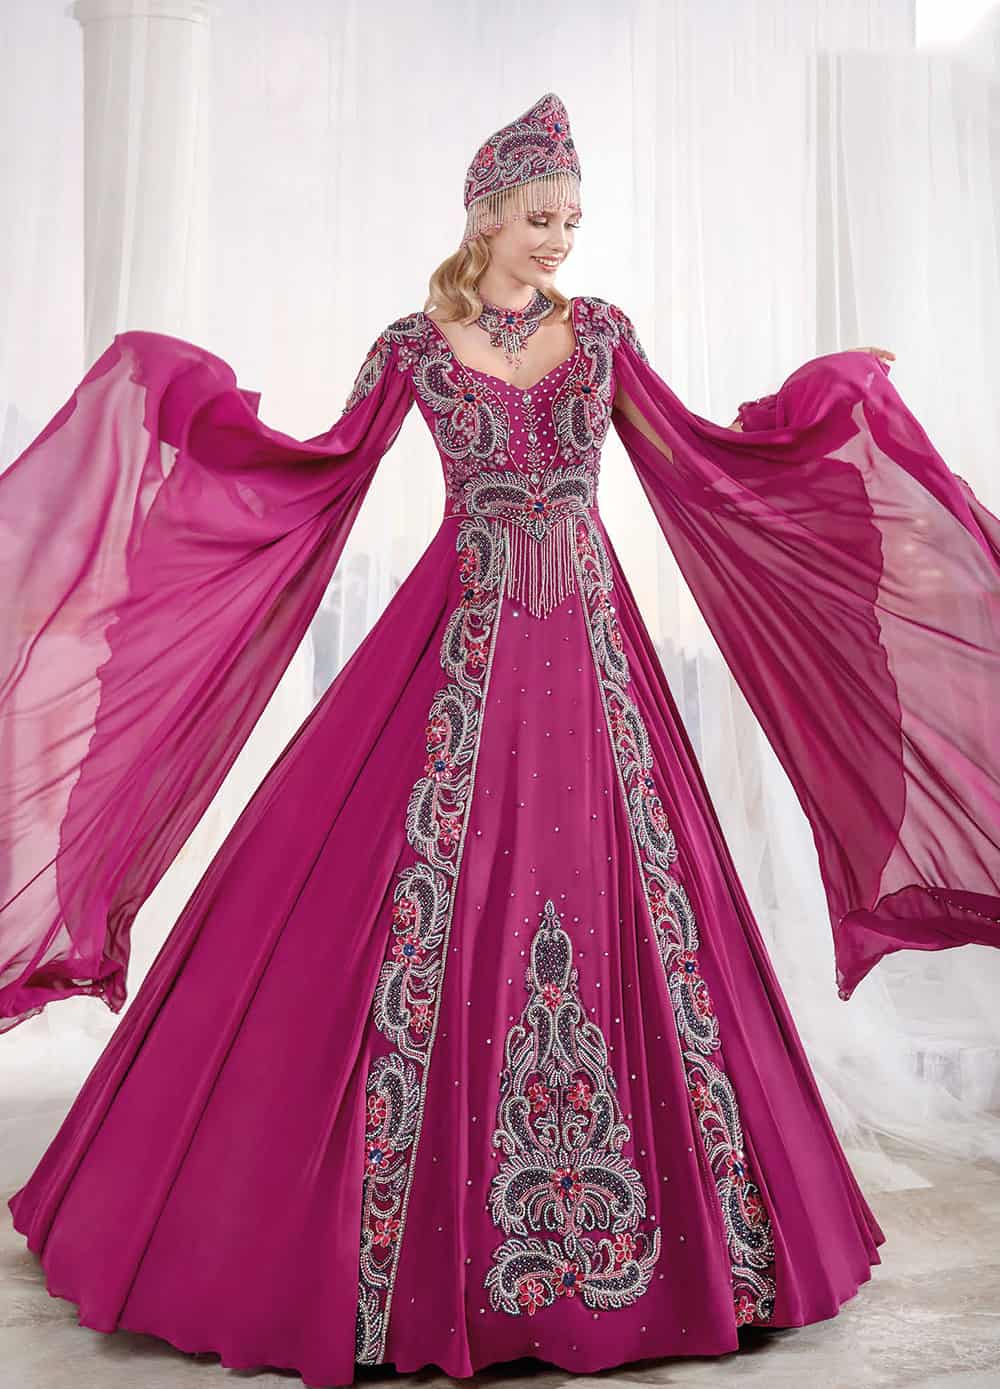 Ottoman Turkish Wedding Dress Online Shopping Muslim Dress Evening Dress